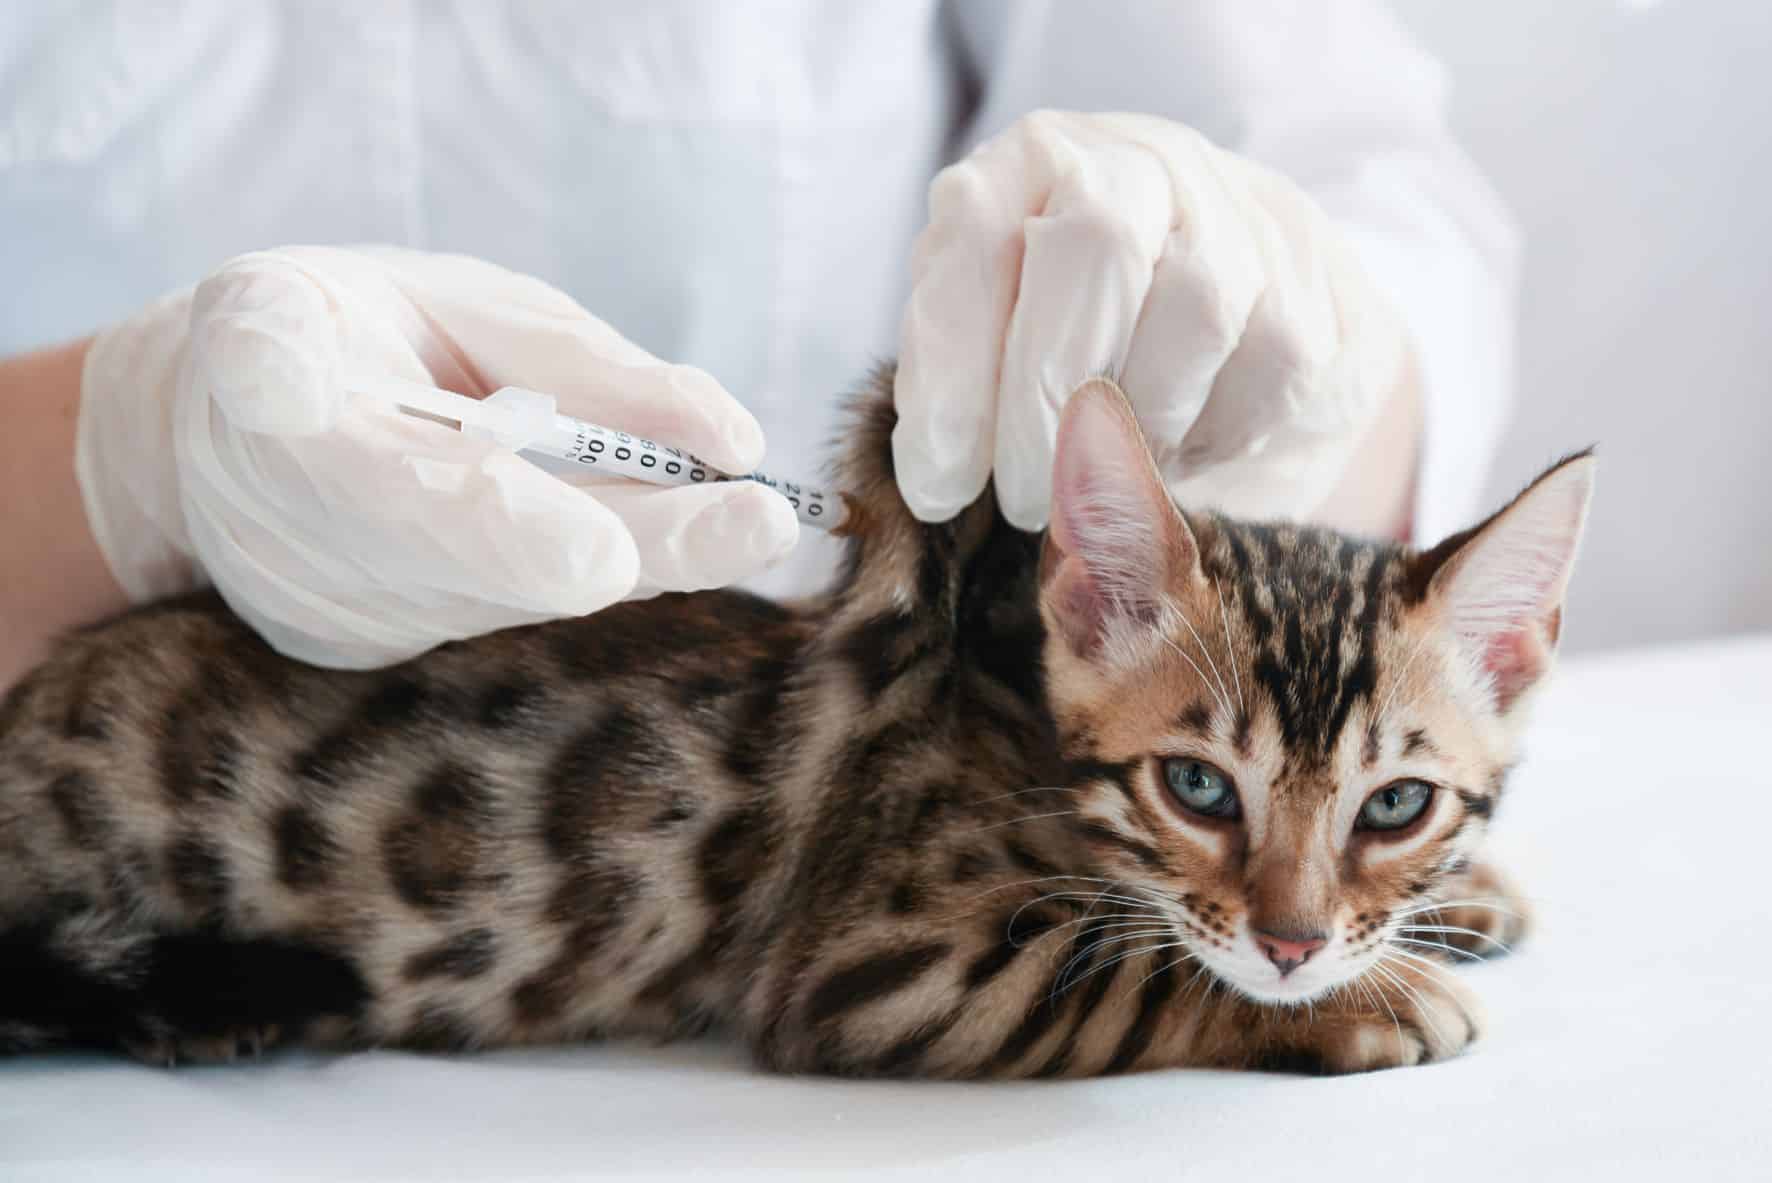 cat vaccinated